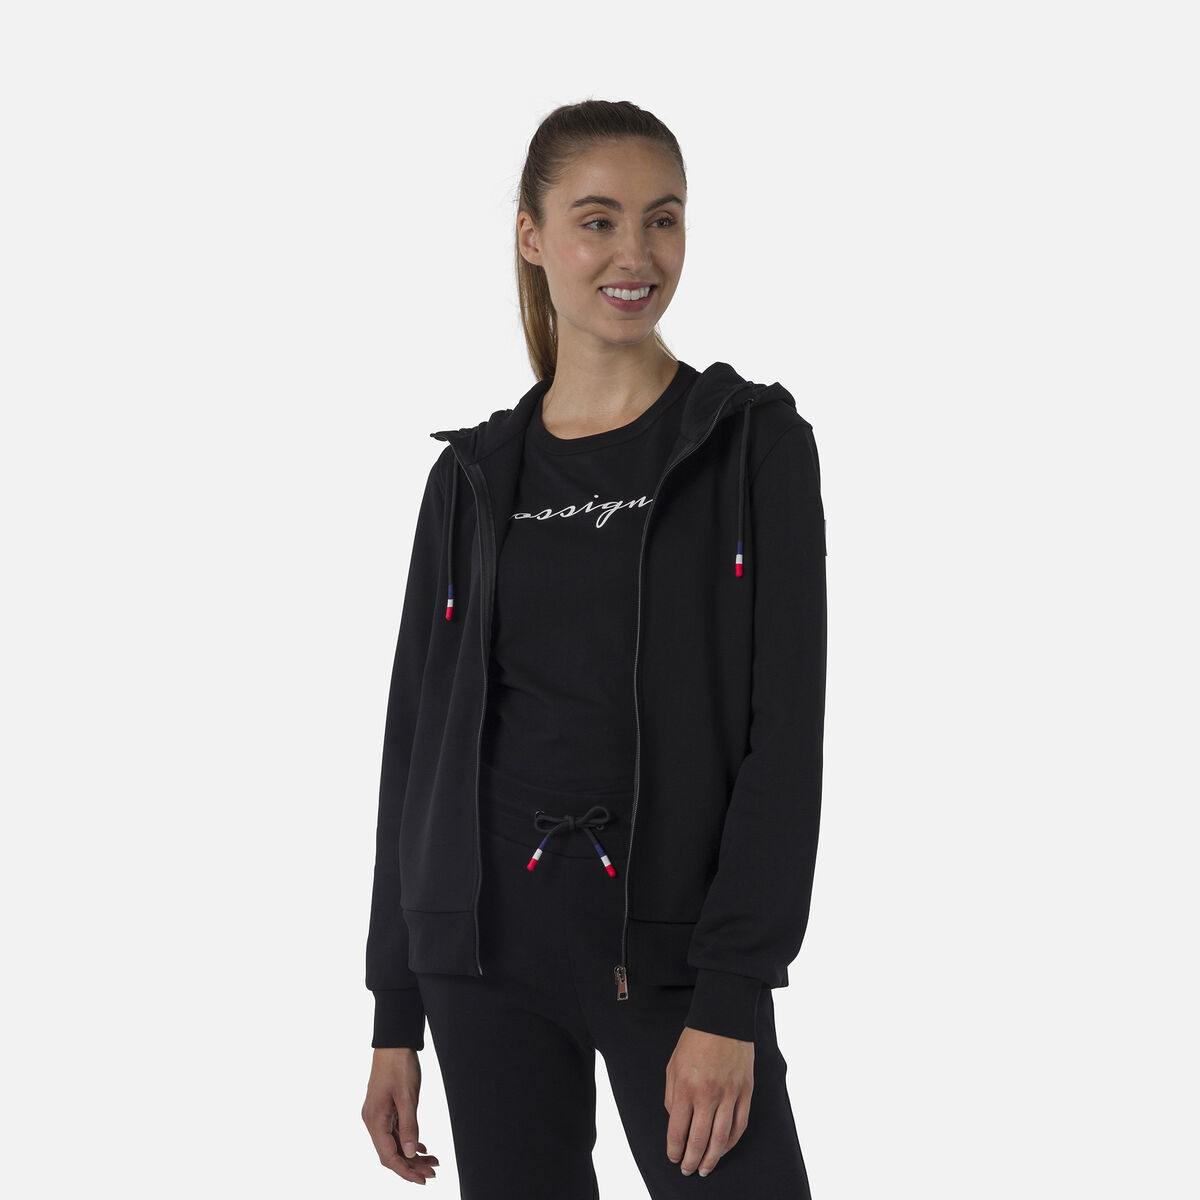 Women's full-zip hooded logo fleece sweatshirt